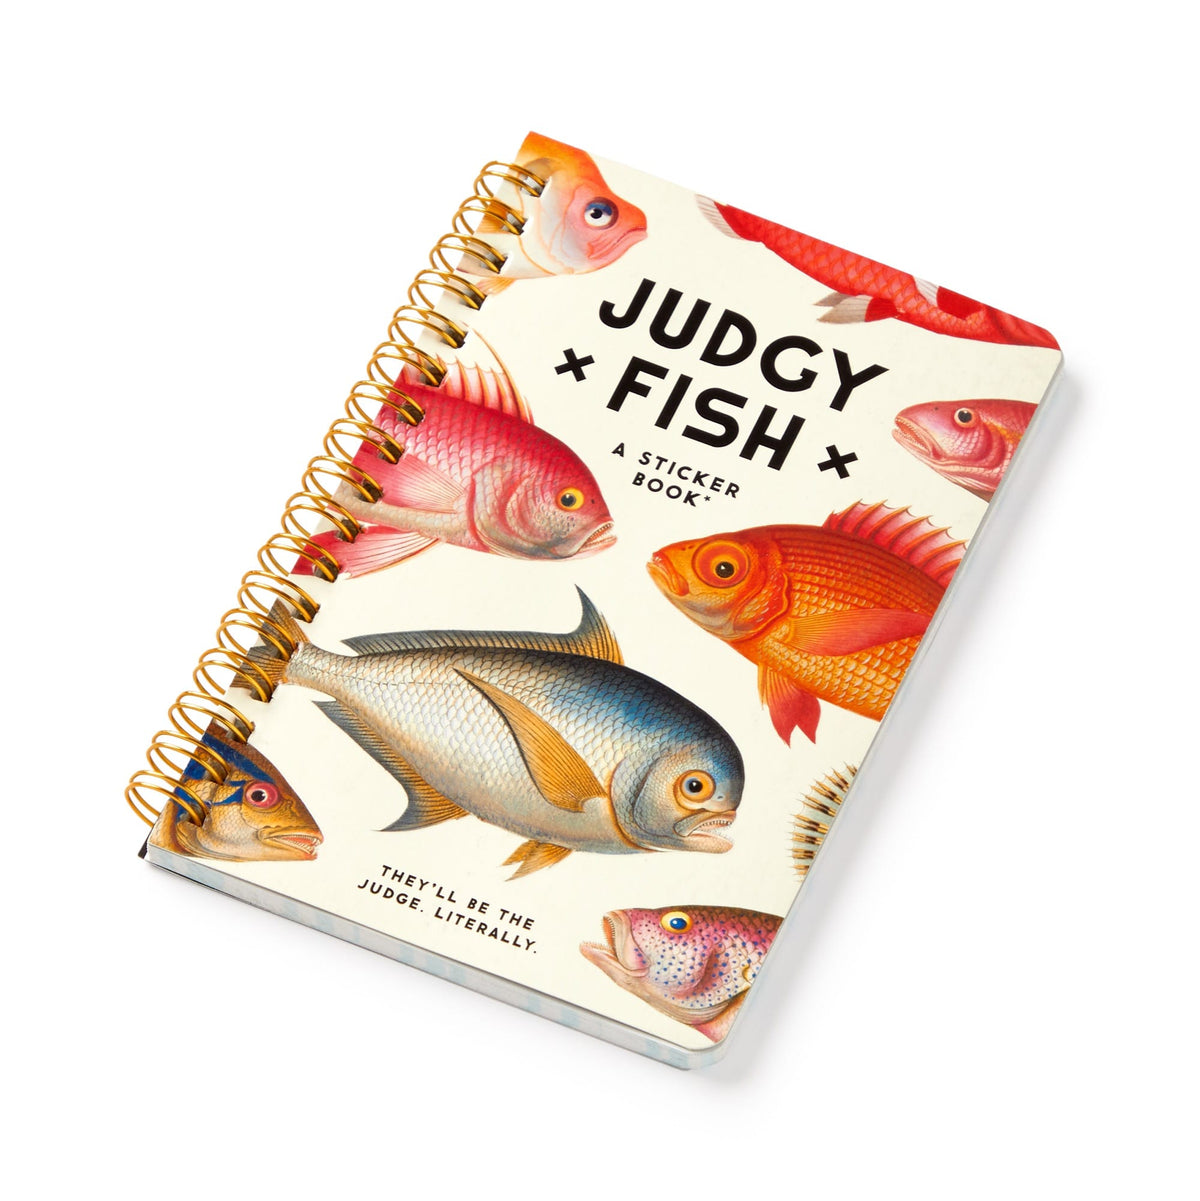 Judgy Fish Sticker Book Sticky Notes Brass Monkey 